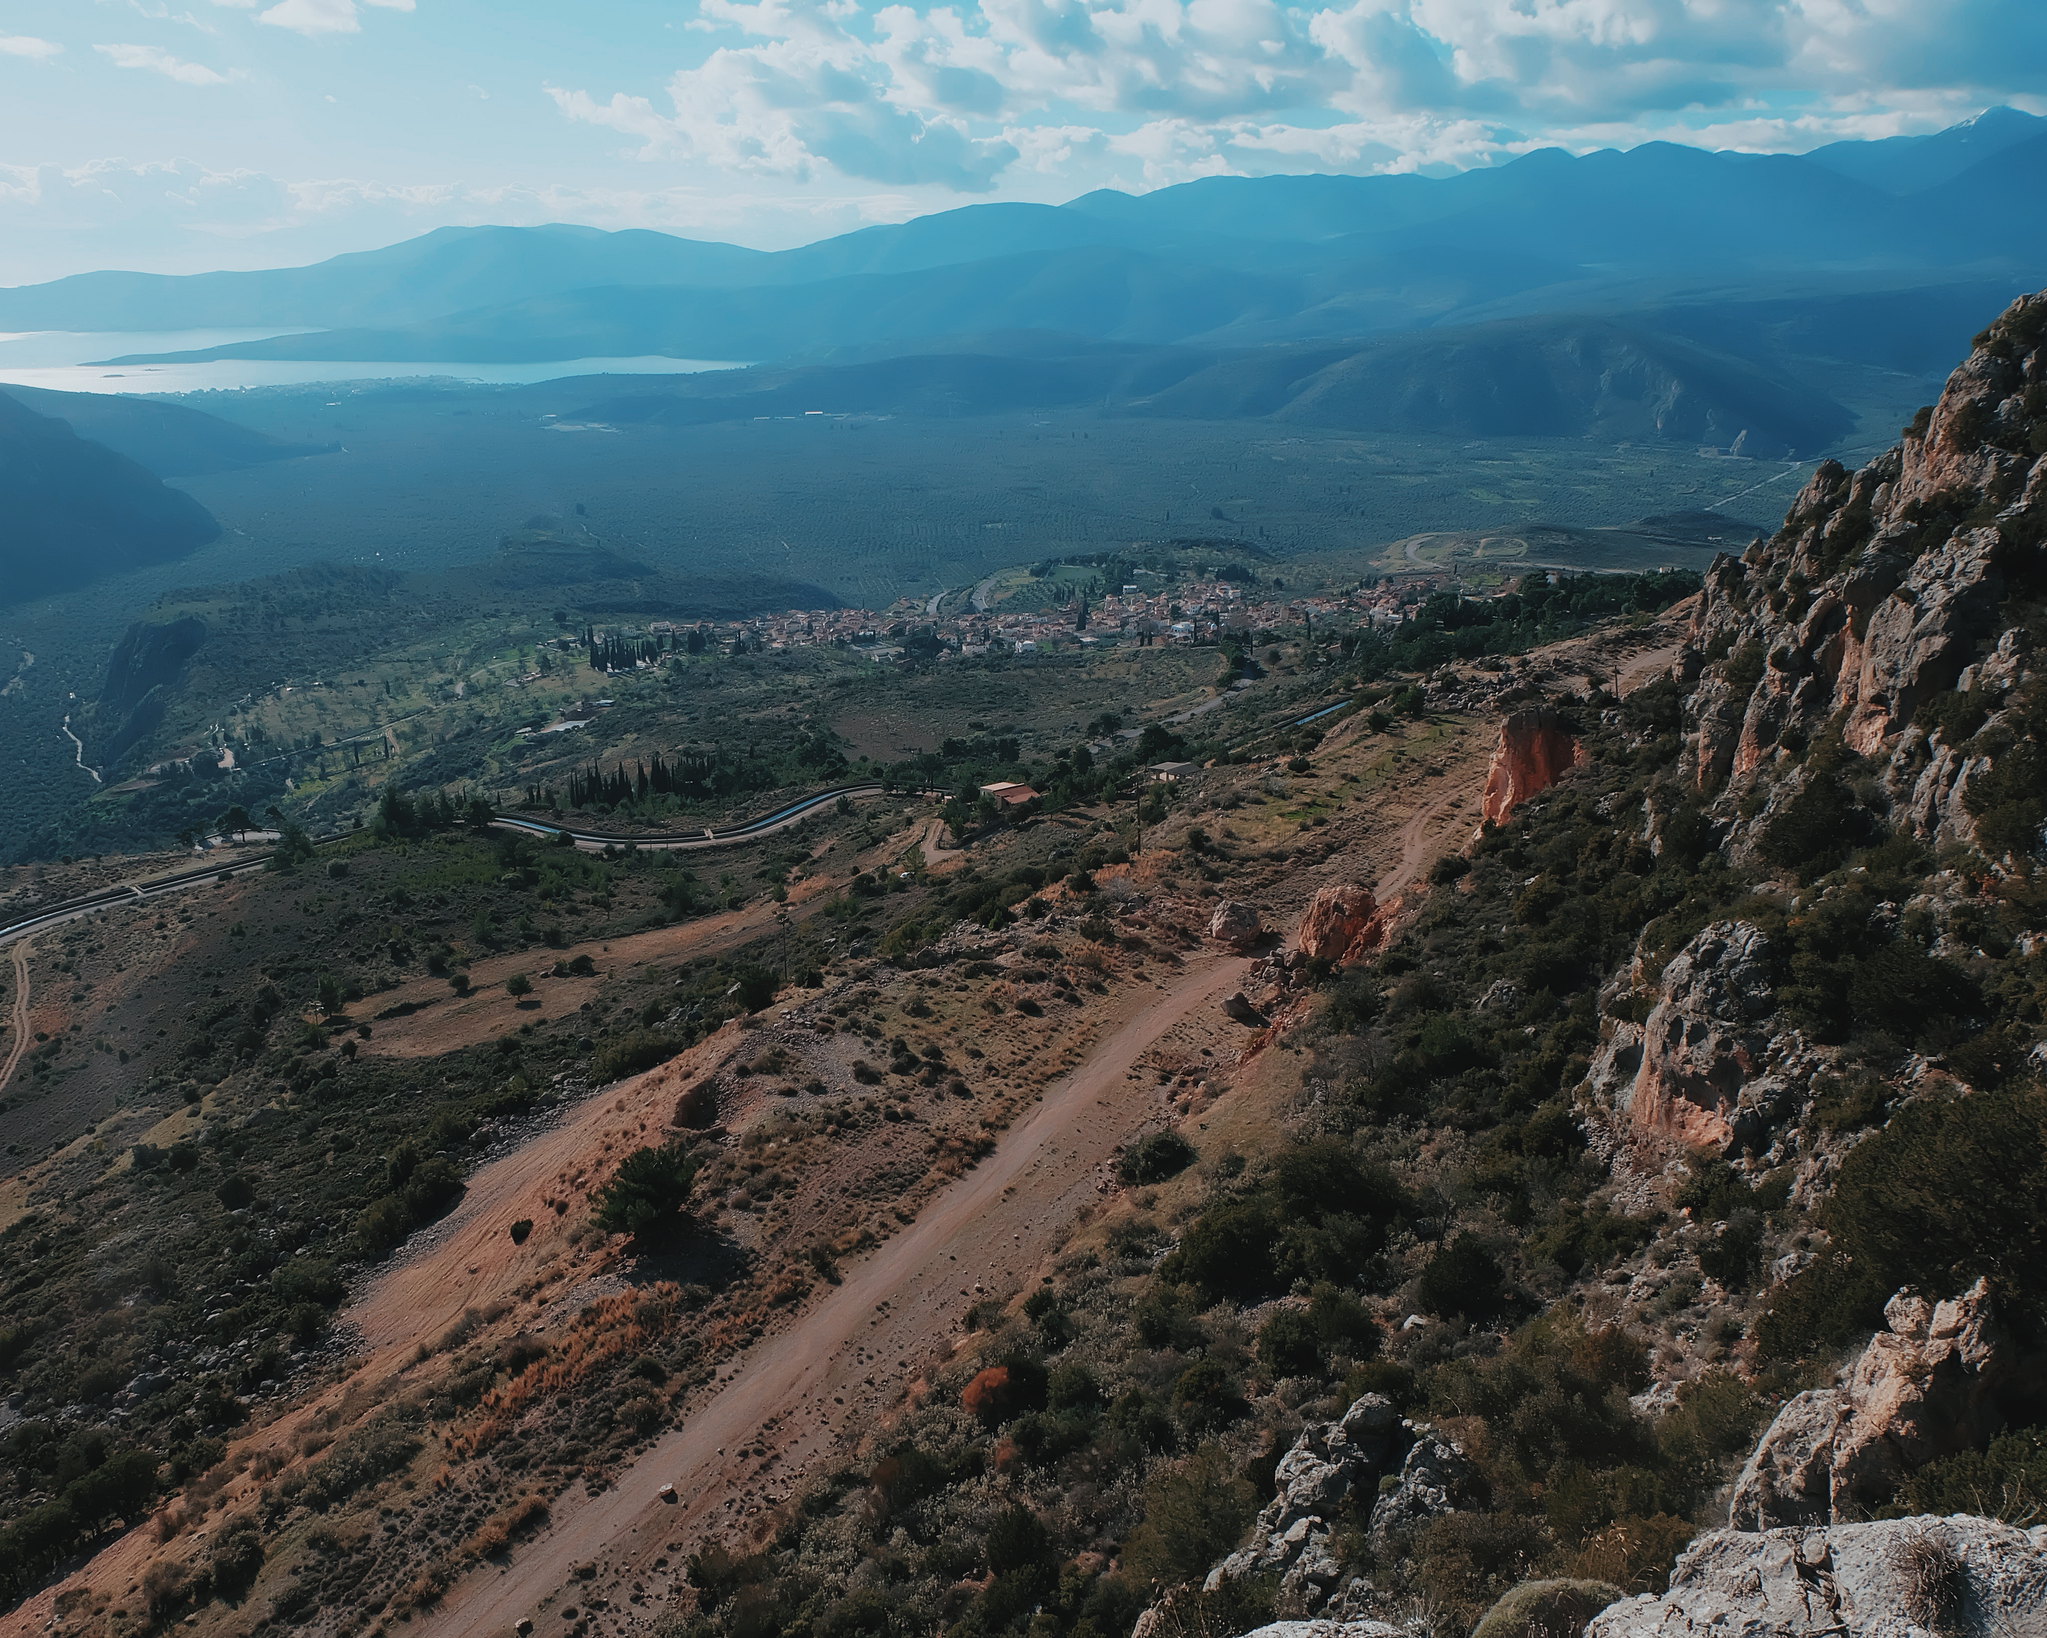 Oracle of Delphi Greece location